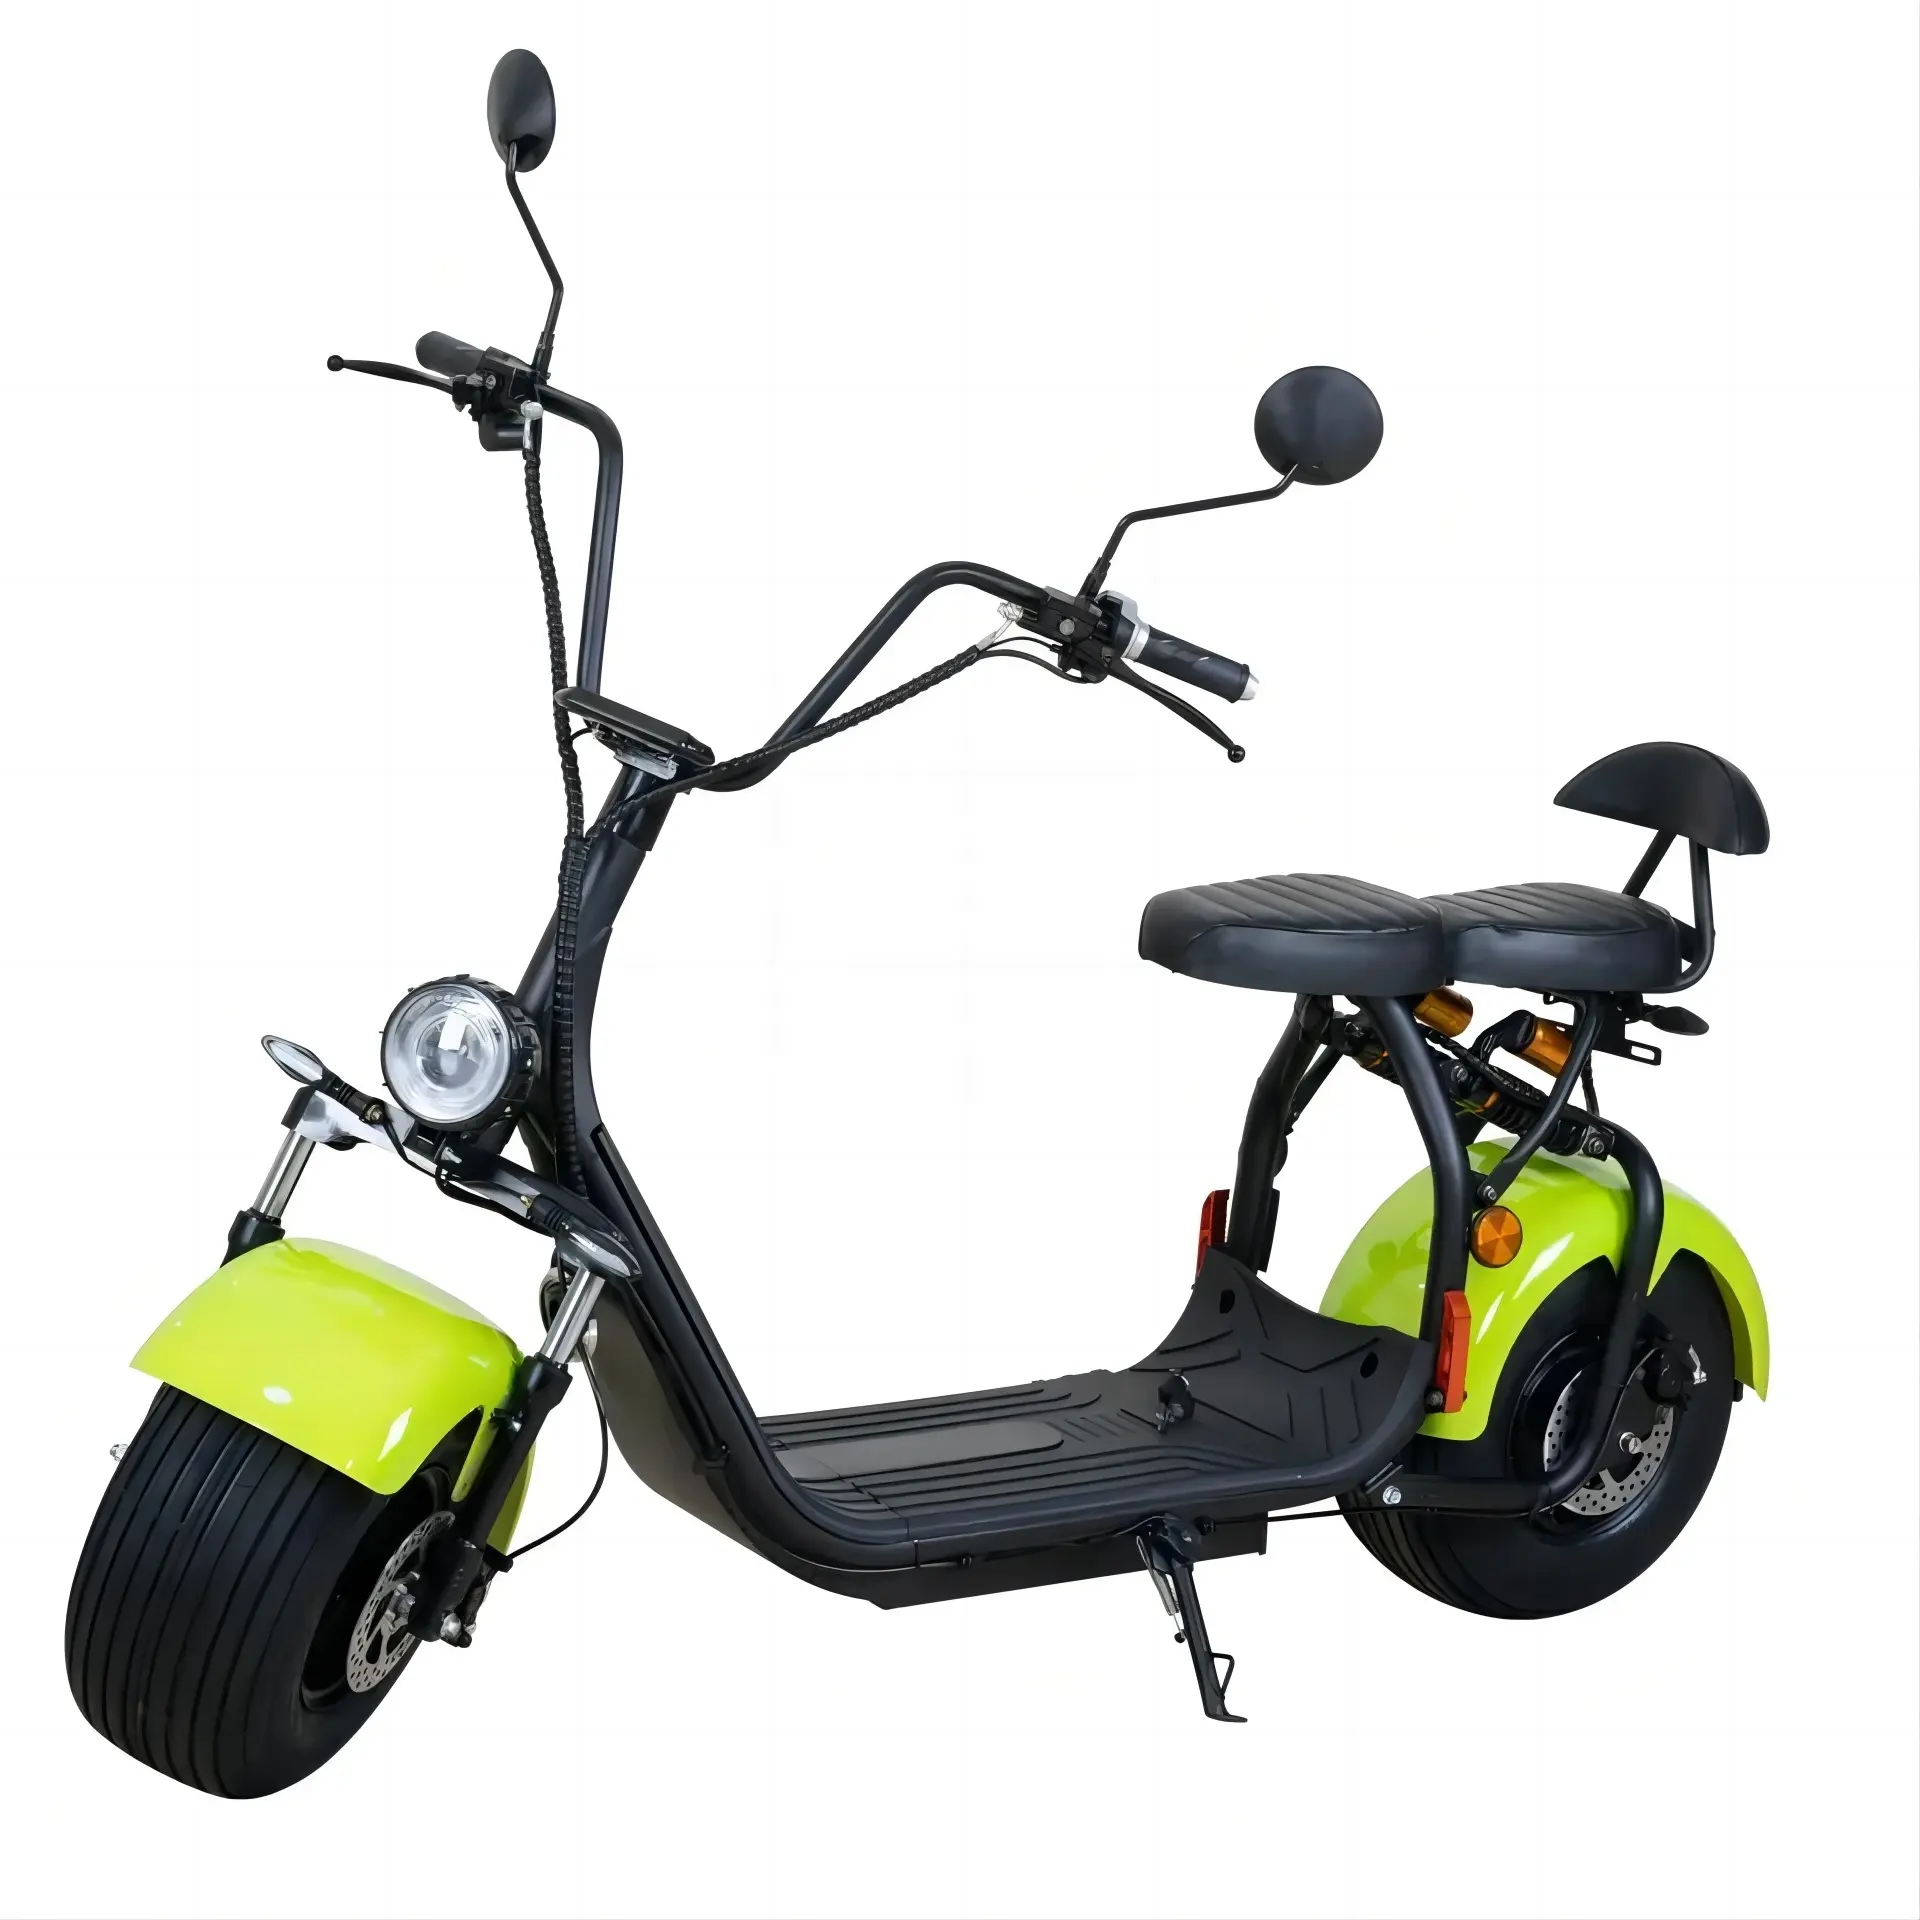 OEM Cina murah kuat eblike skuter listrik ban roda lemak COC1500w 2000w pasar Eropa Smarda skuter Golf untuk dewasa